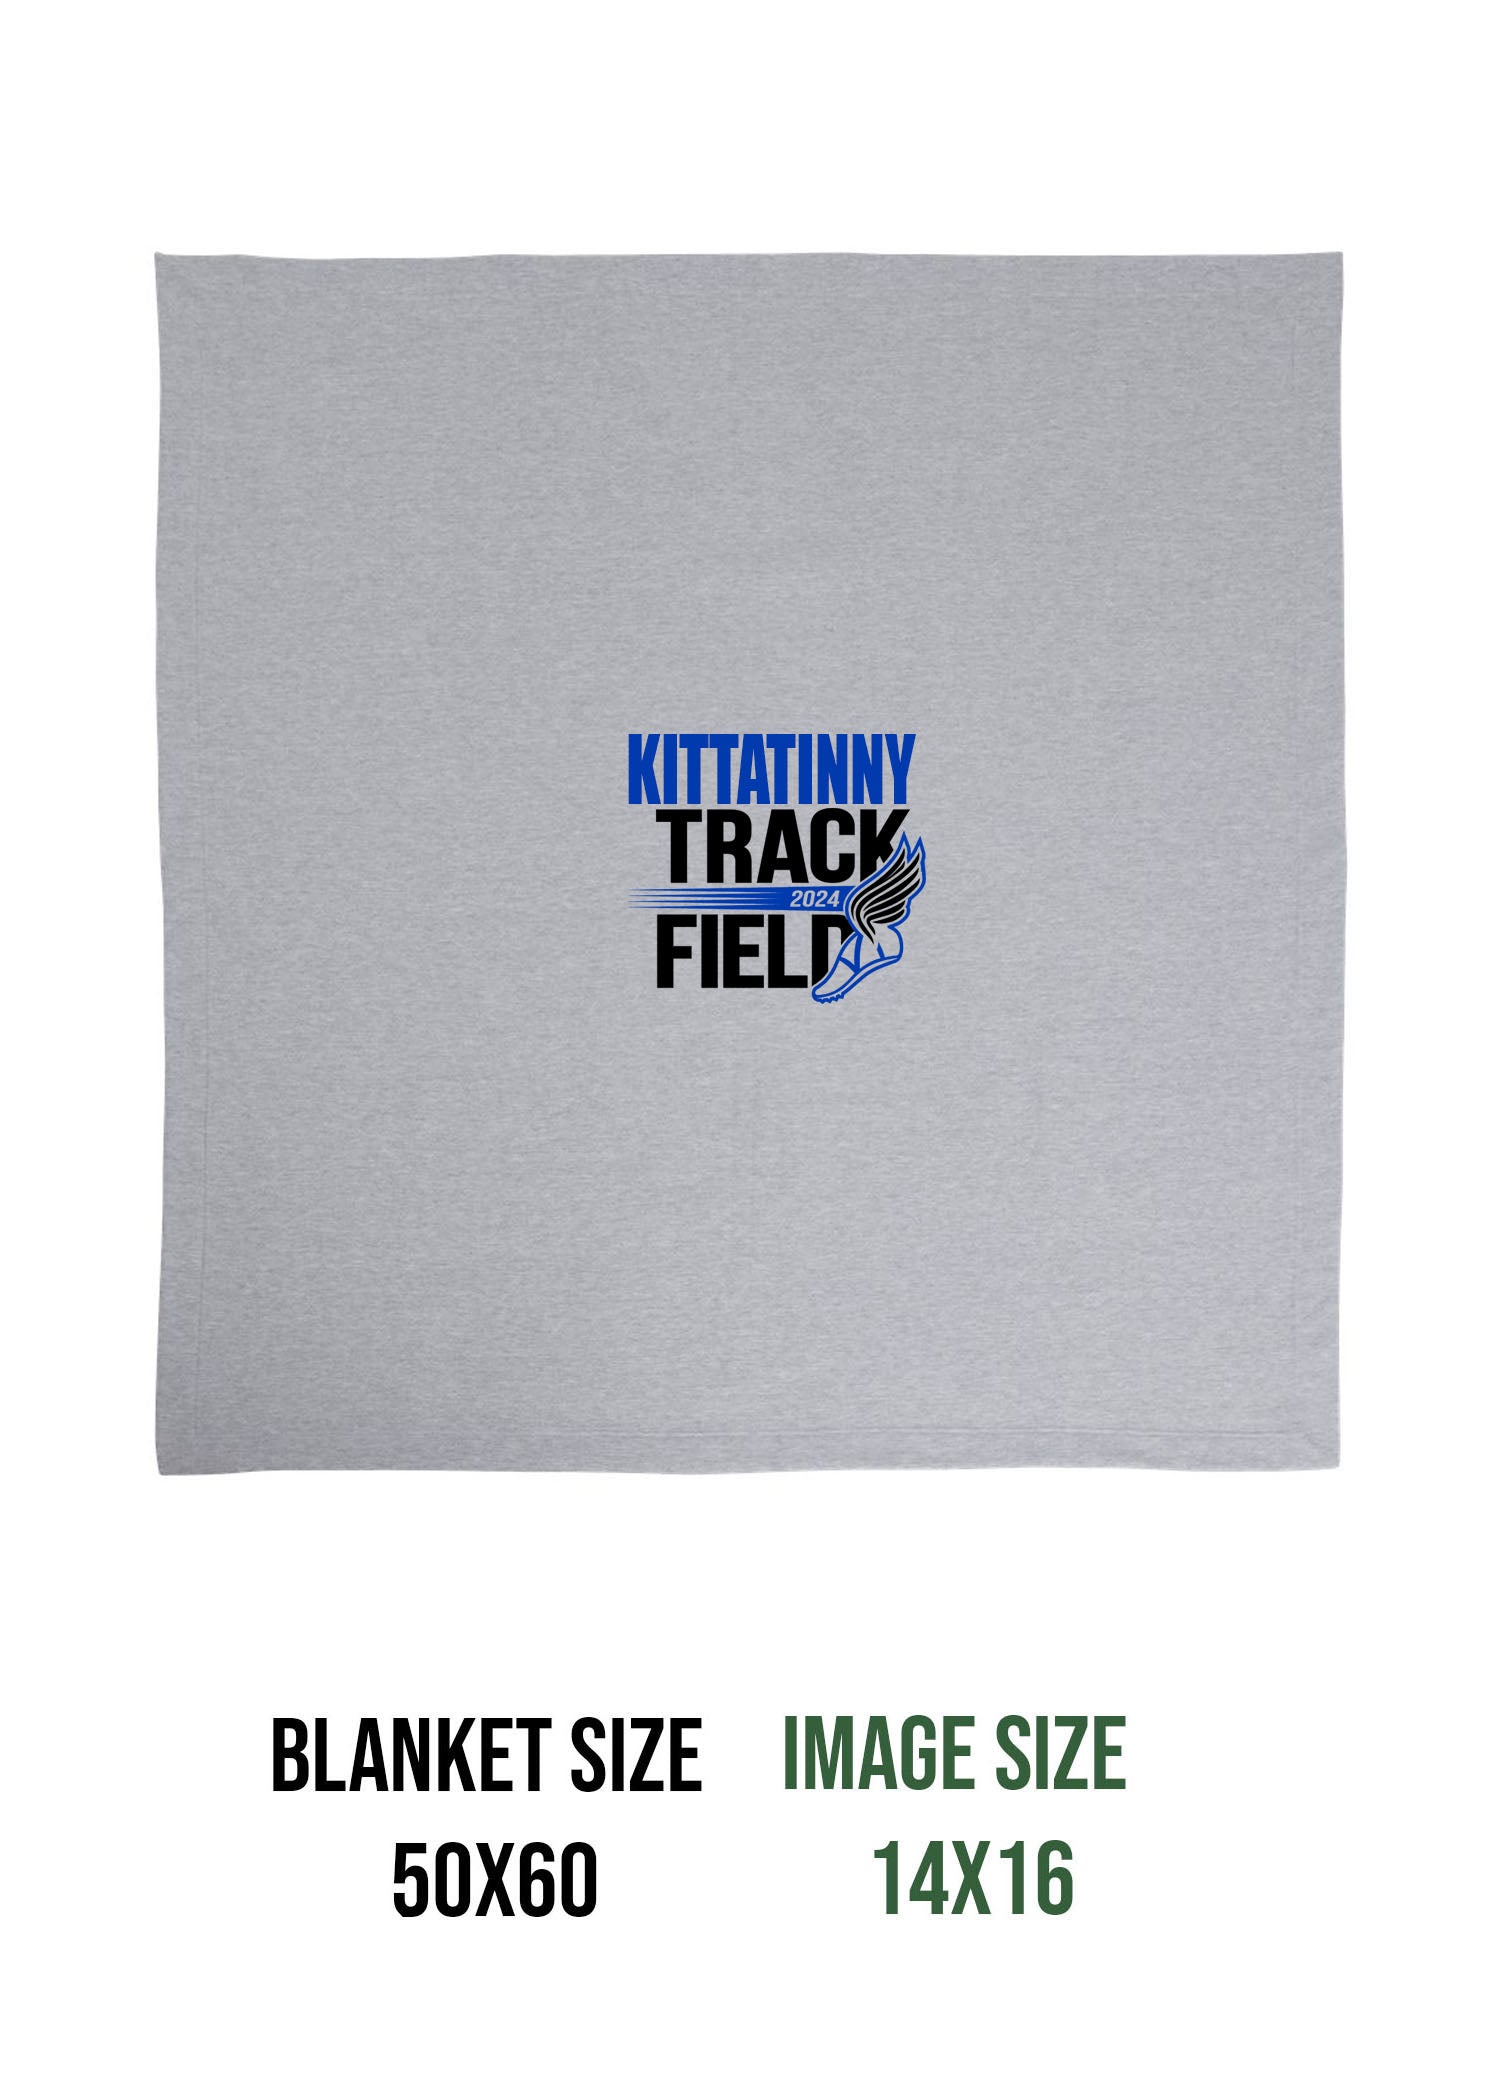 Kittatinny Track Design 6 Blanket